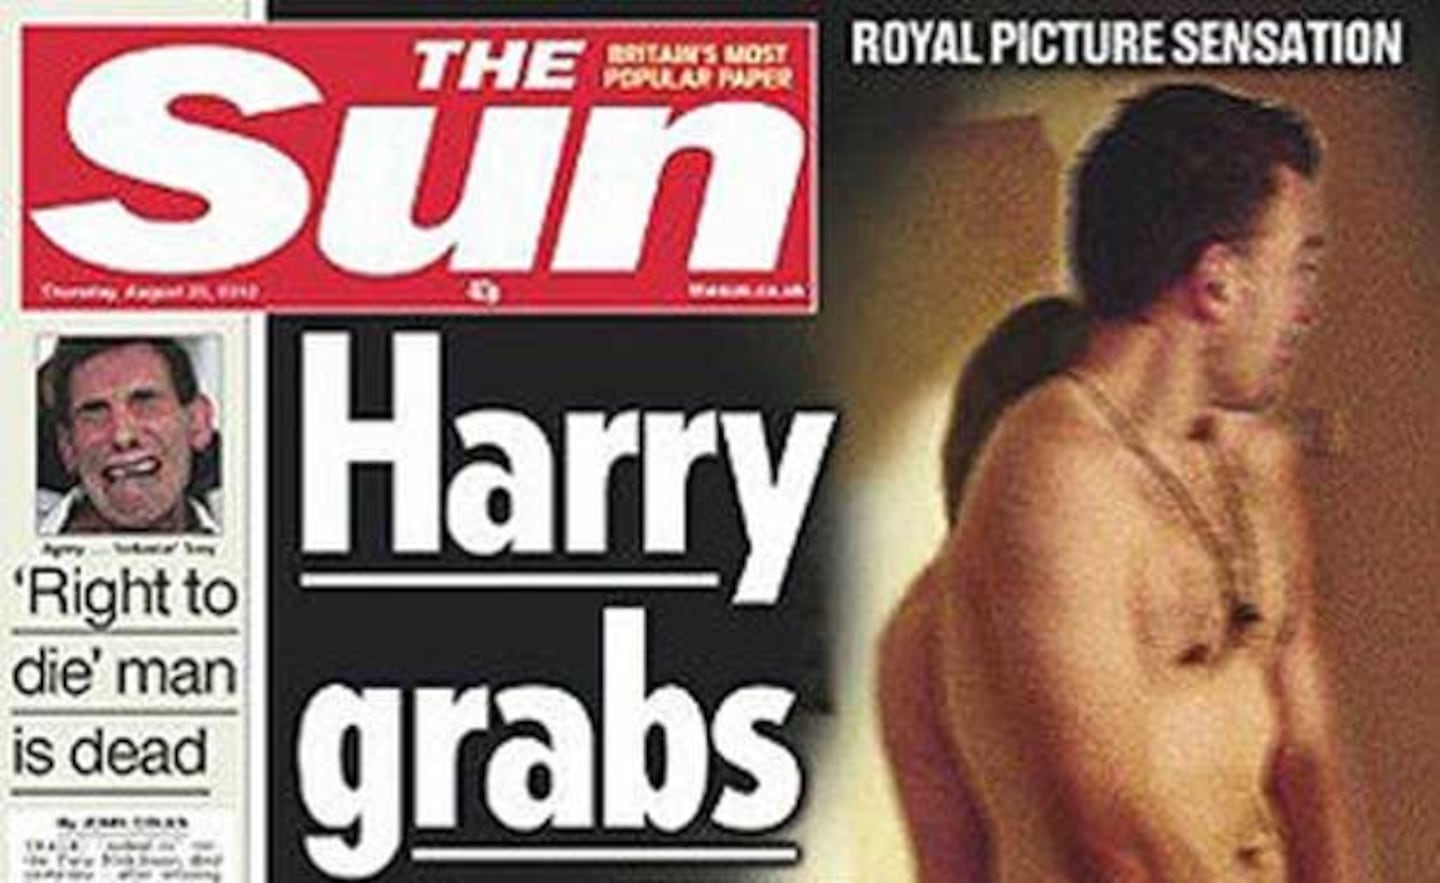 La increíble recreación de The Sun de la escandalosa foto del príncipe Harry. (Foto: The Sun)